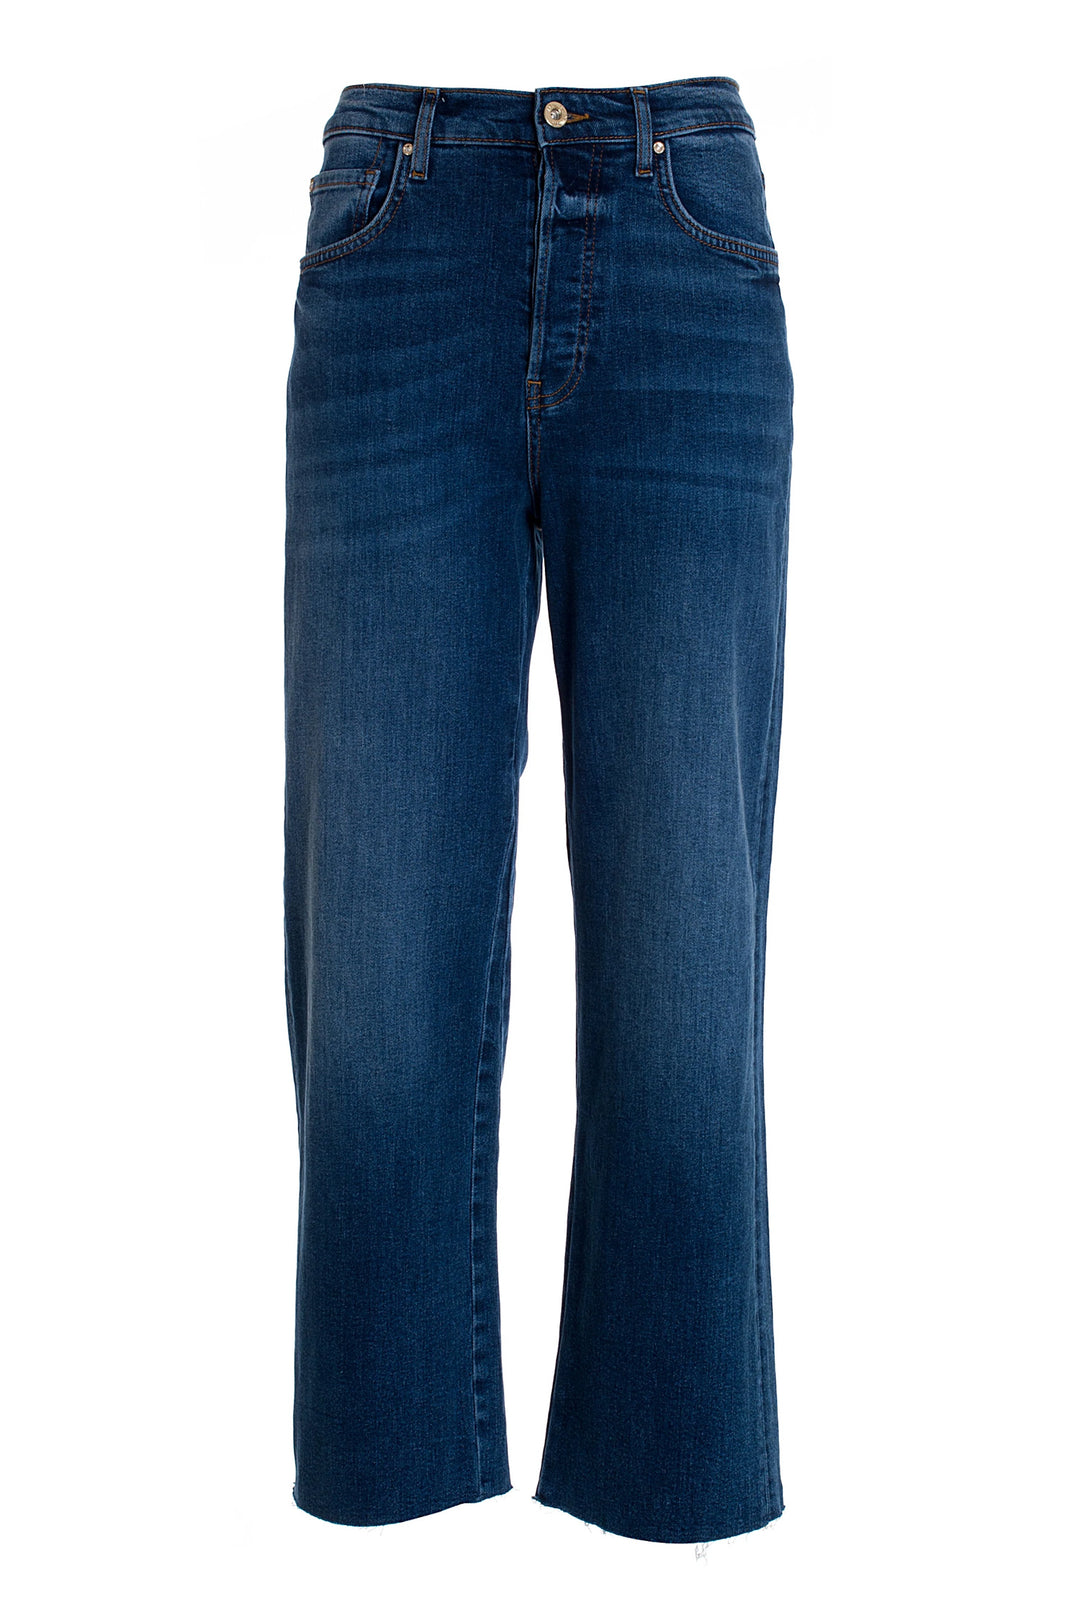 FRACOMINA Jeans culotte wide in denim con lavaggio medio - Mancinelli 1954